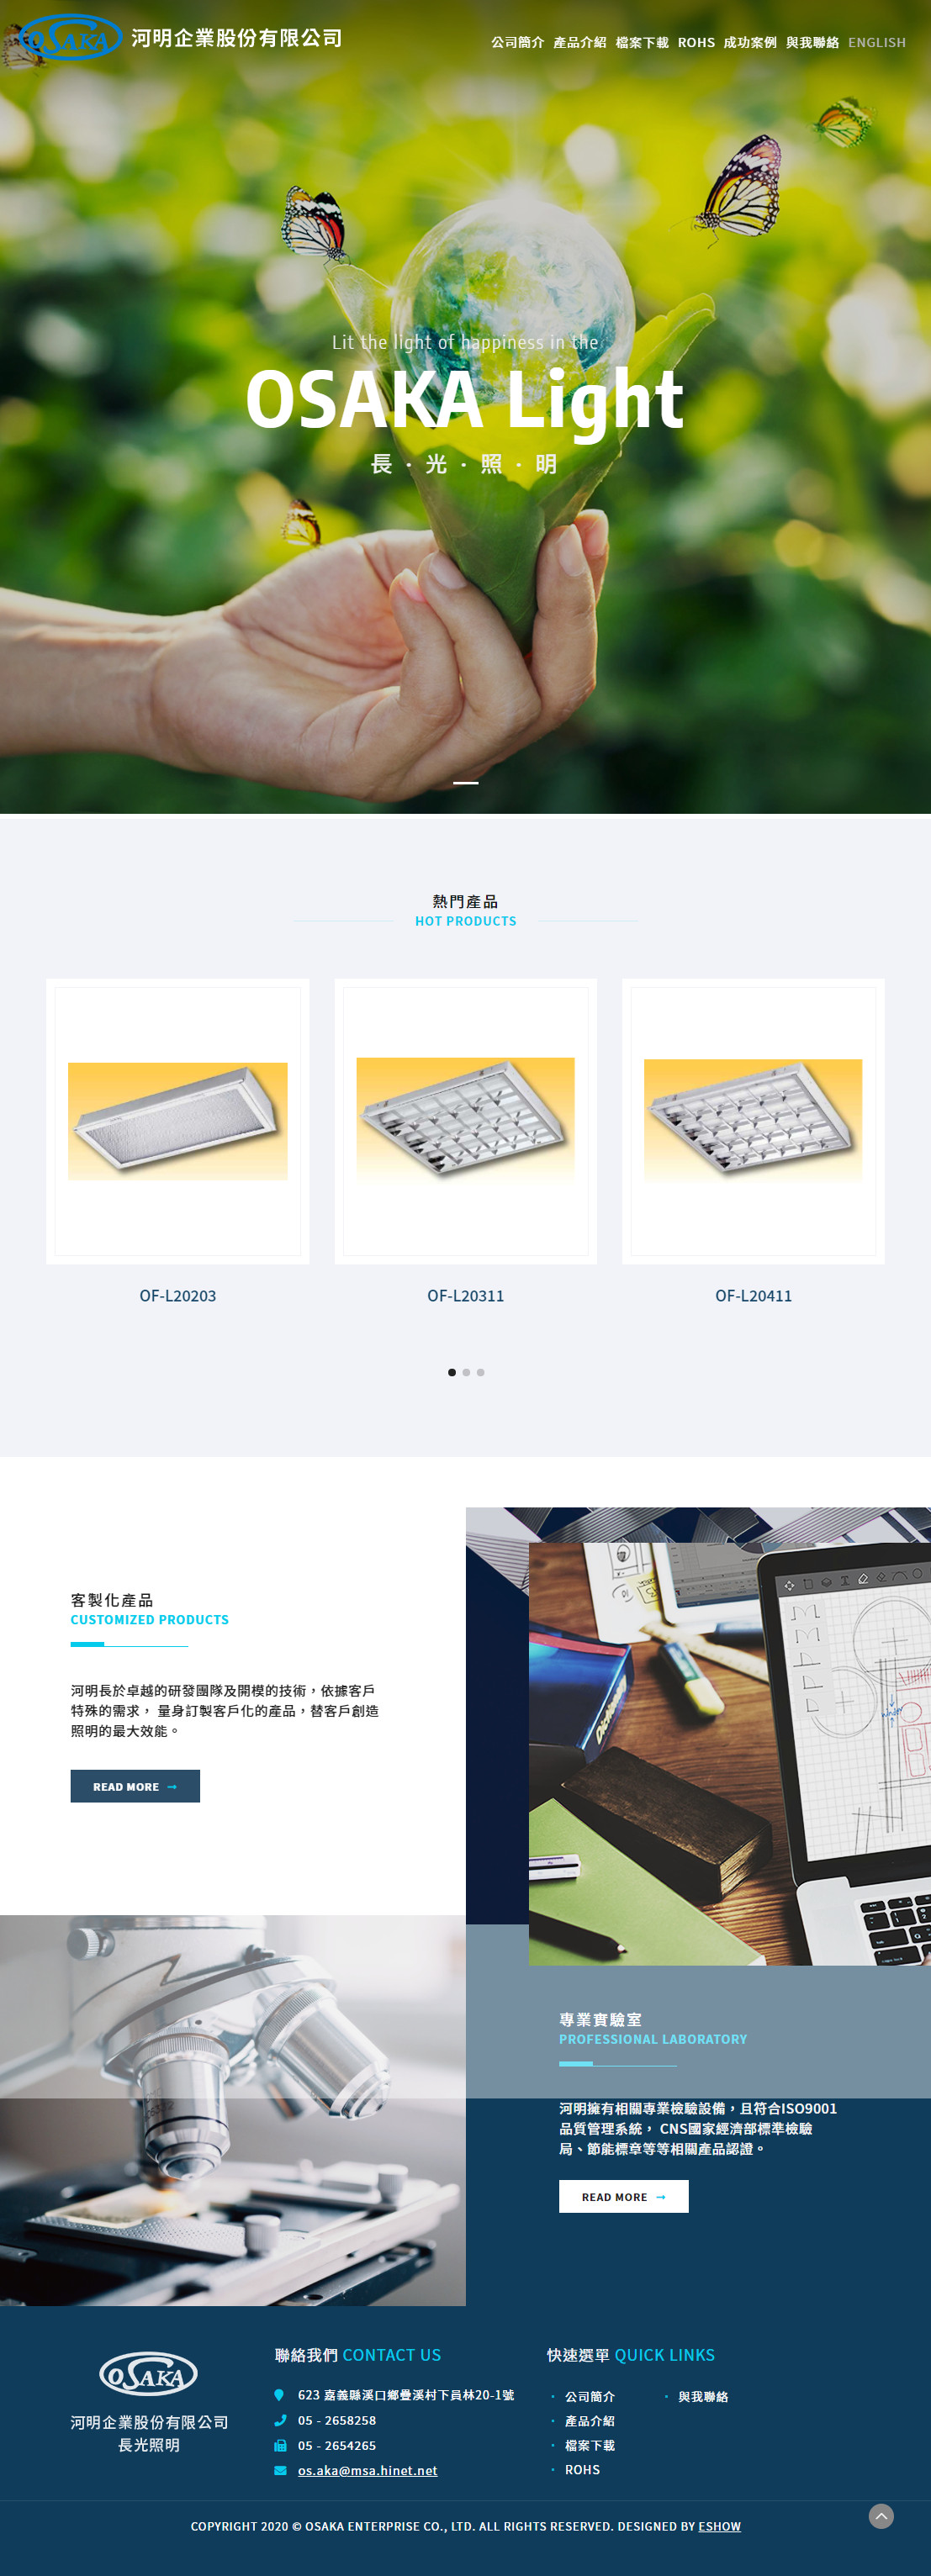 河明企業股份有限公司 RWD響應式企業網站設計
網站設計